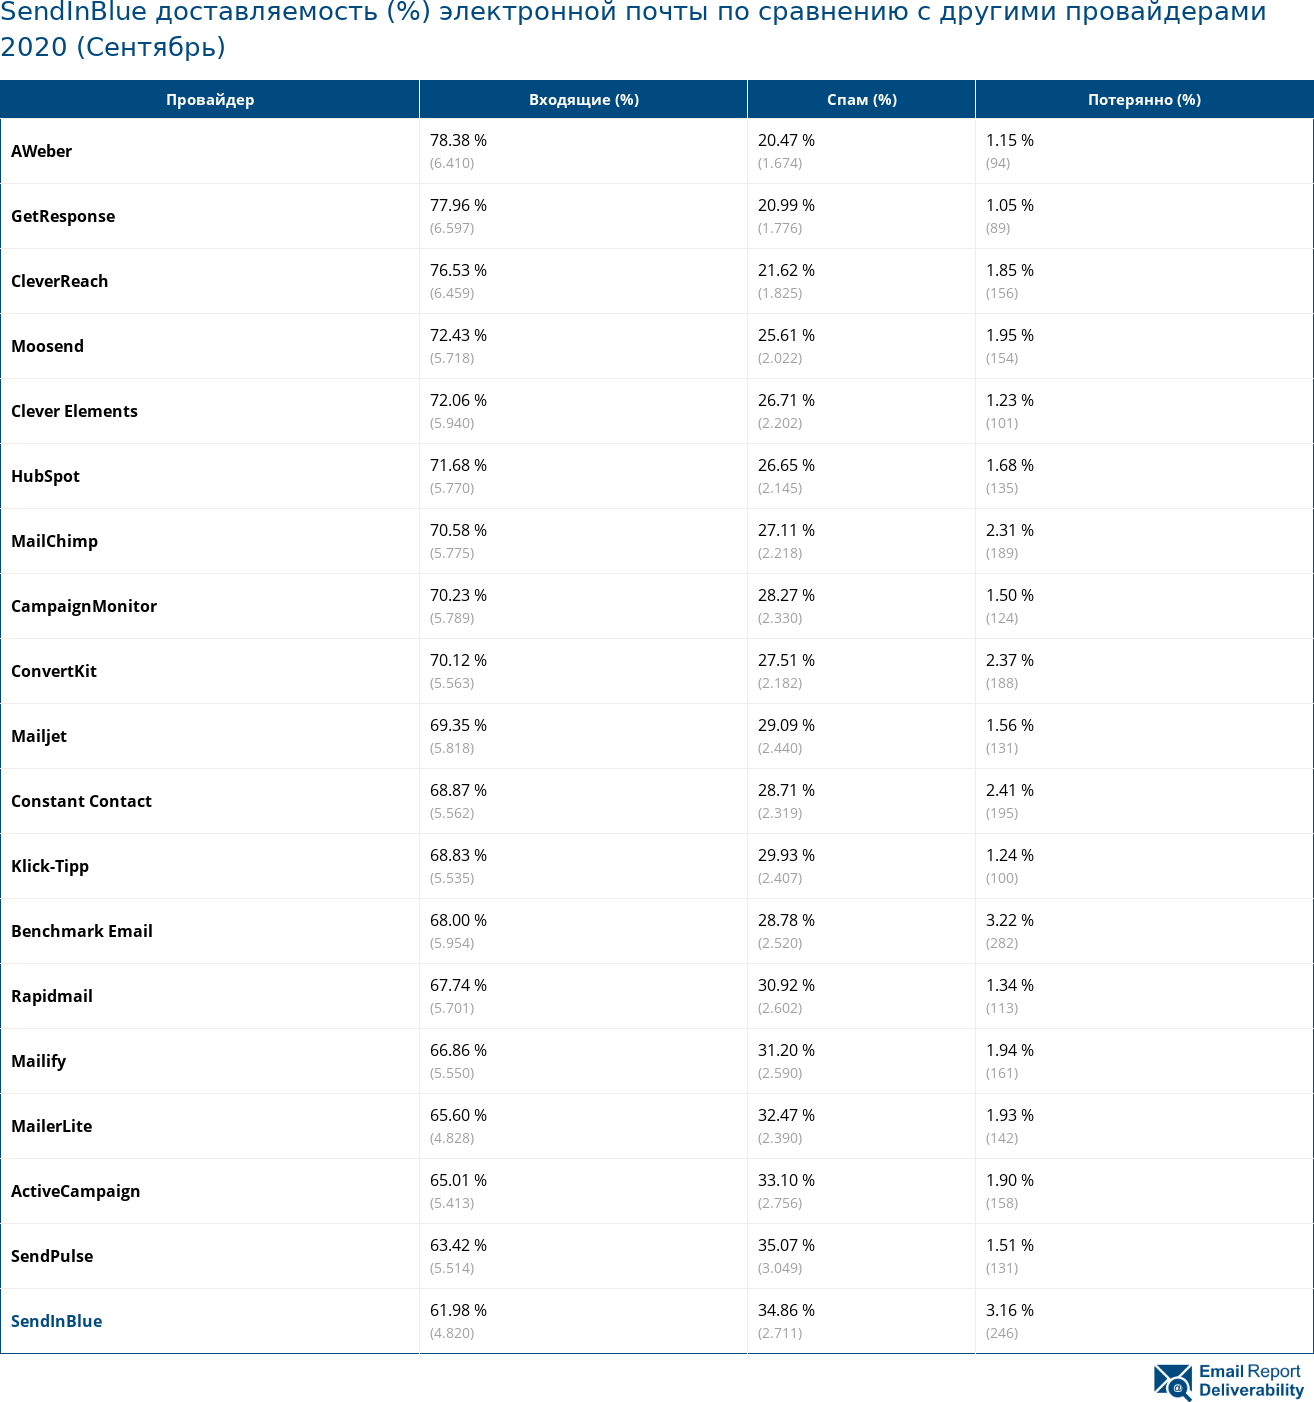 SendInBlue доставляемость (%) электронной почты по сравнению с другими провайдерами 2020 (Сентябрь)